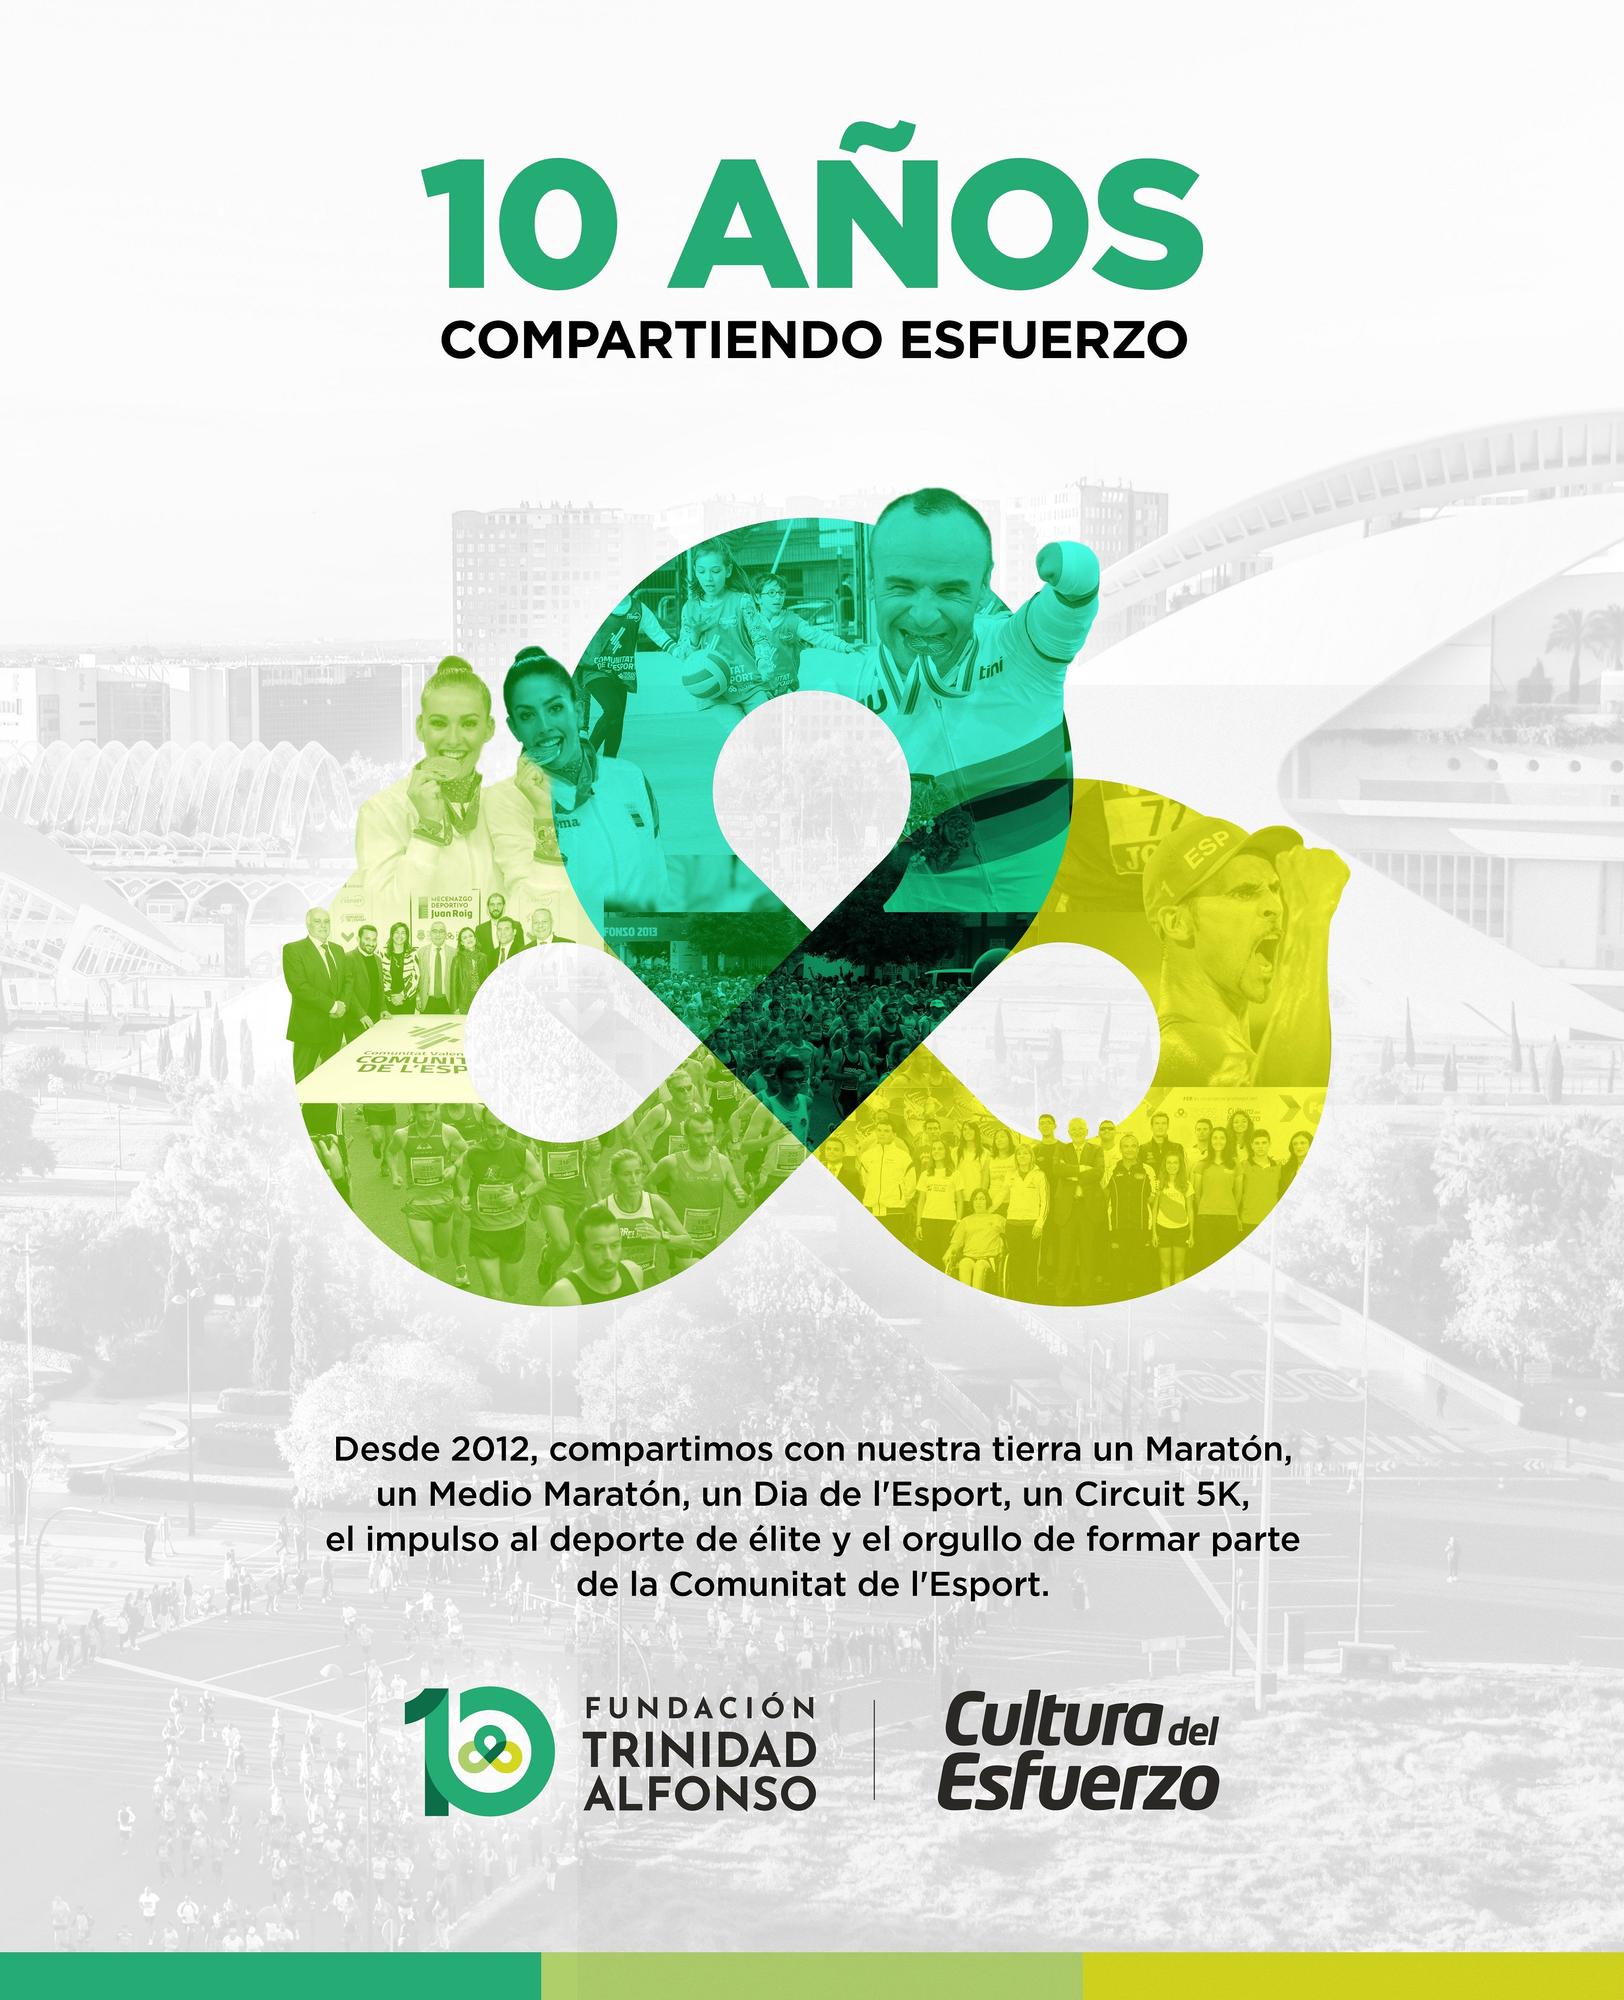 La Fundación Trinidad Alfonso de  Juan Roig cumple diez años de apoyo  al deporte de la Comunitat Valenciana.